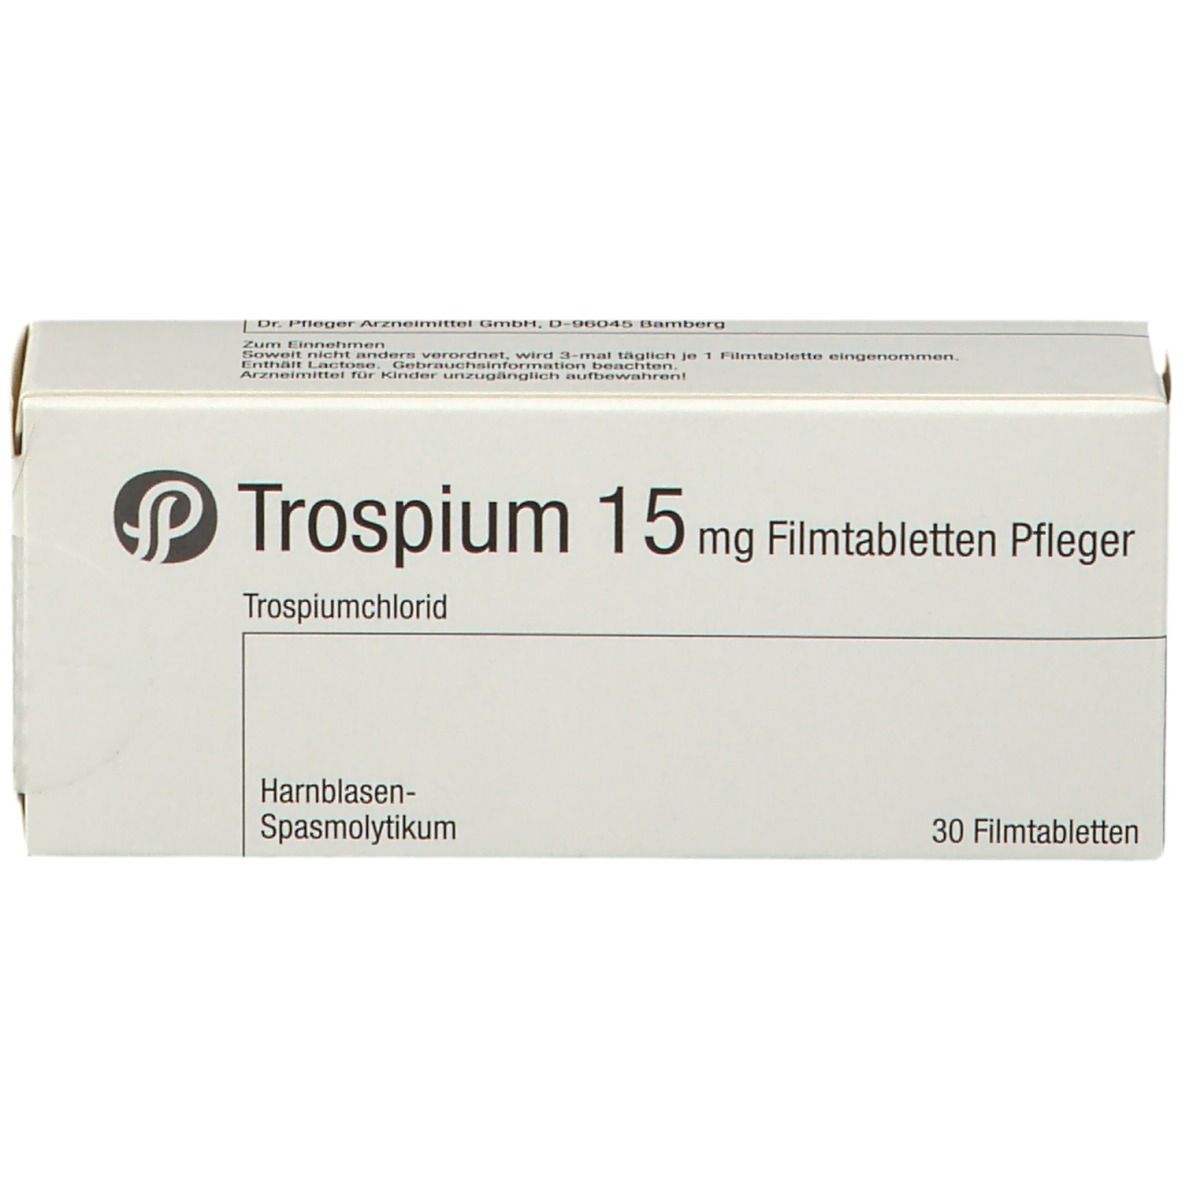 Trospium 15 mg Pfleger